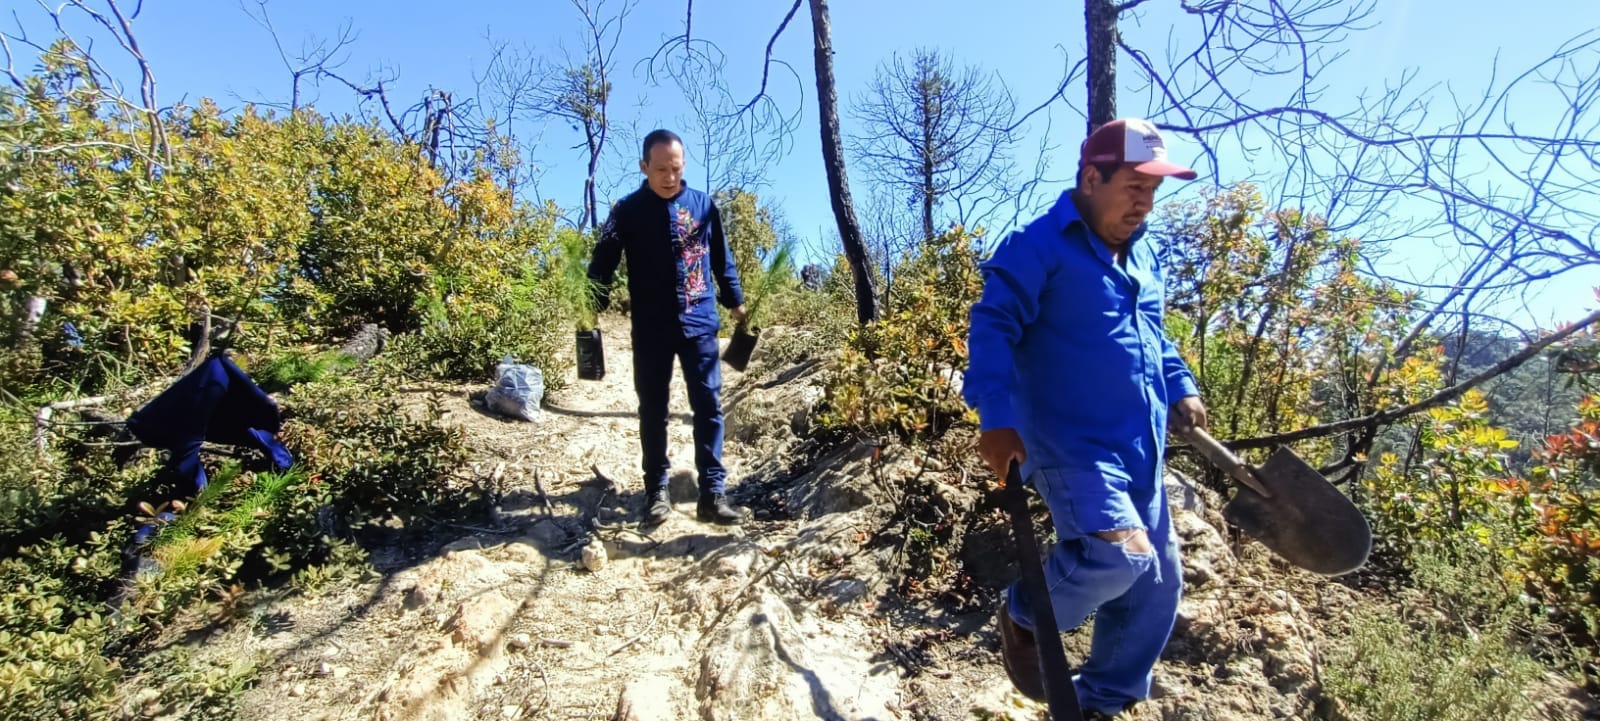 Grupo México apoya con 400 árboles para reforestación en bosques de  Acaxochitlán | Outletminero